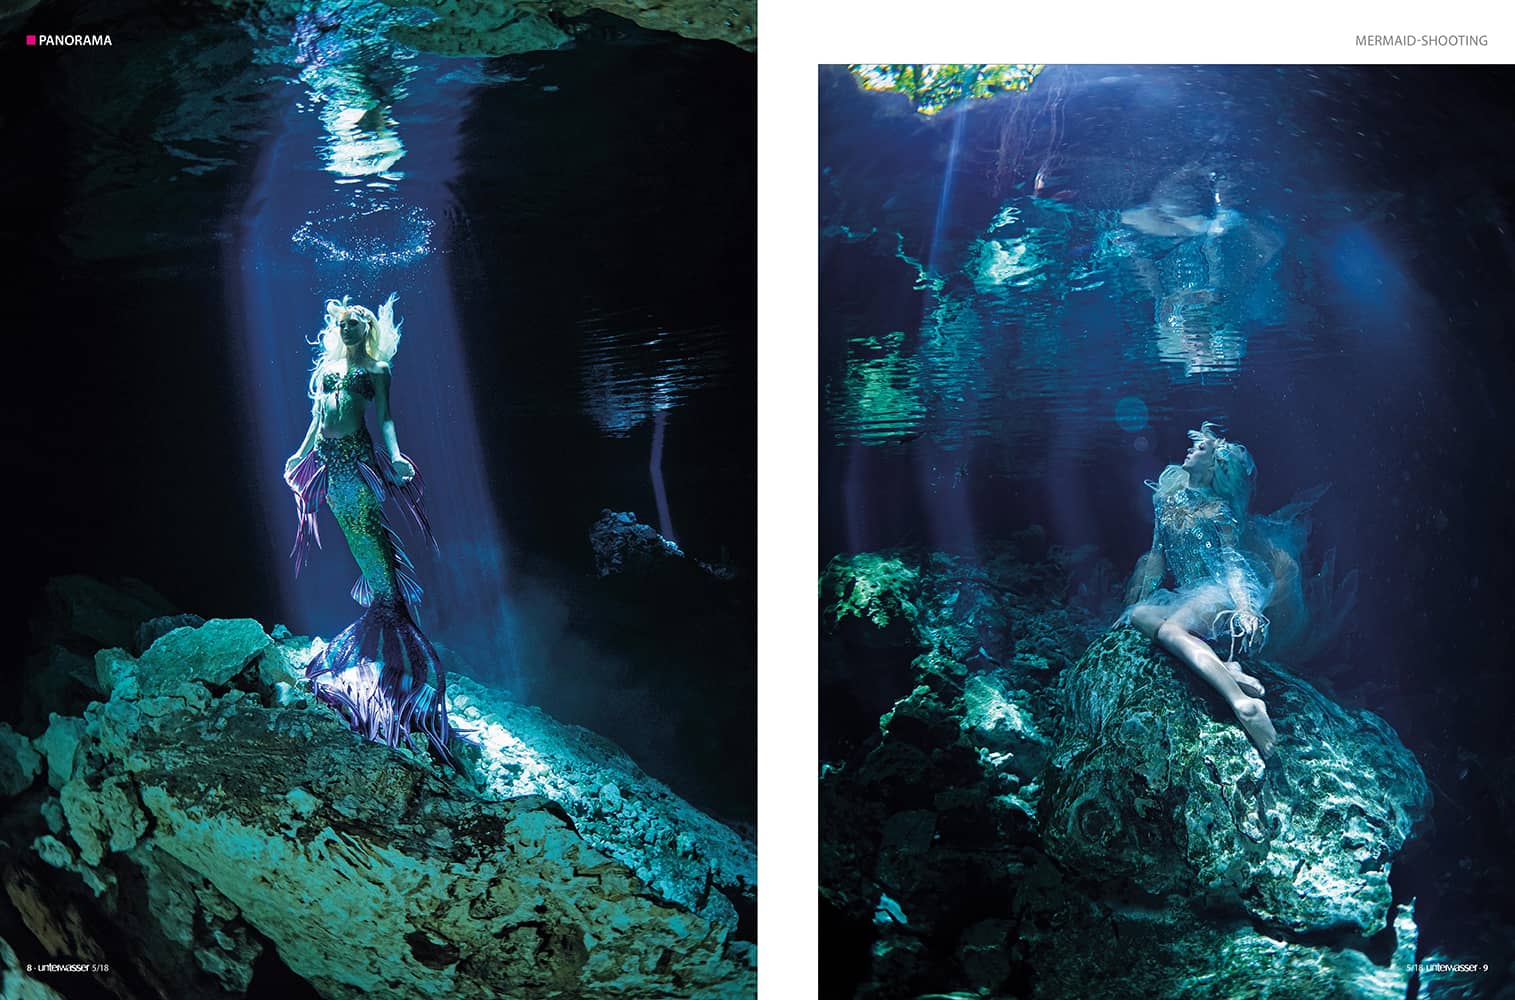 Mermaid underwatershooting with Hannah Mermaid.